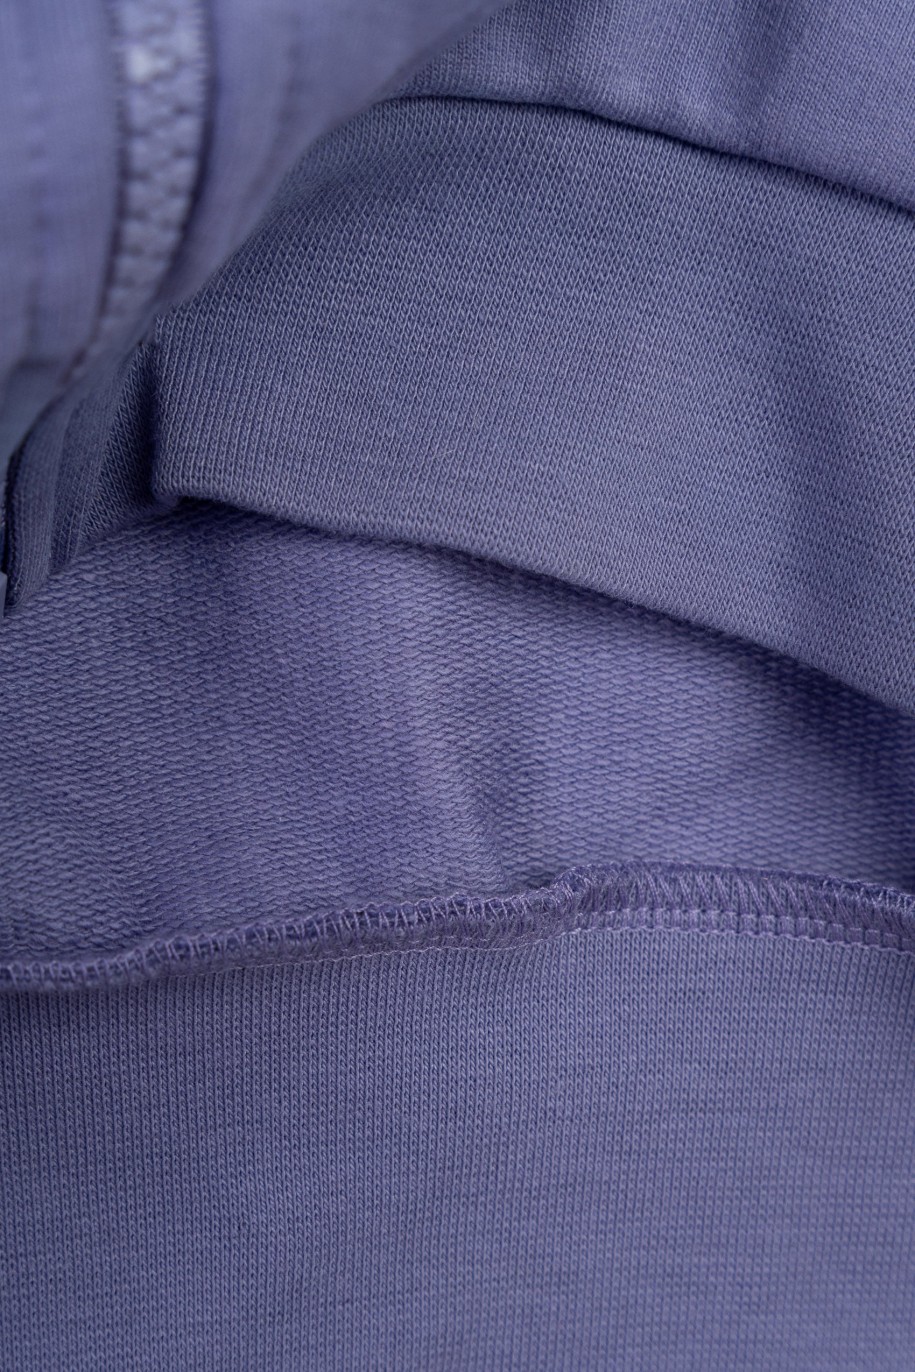 Fioletowa bluza z kapturem z autorską grafiką z tyłu zapinana na zamek - 47293